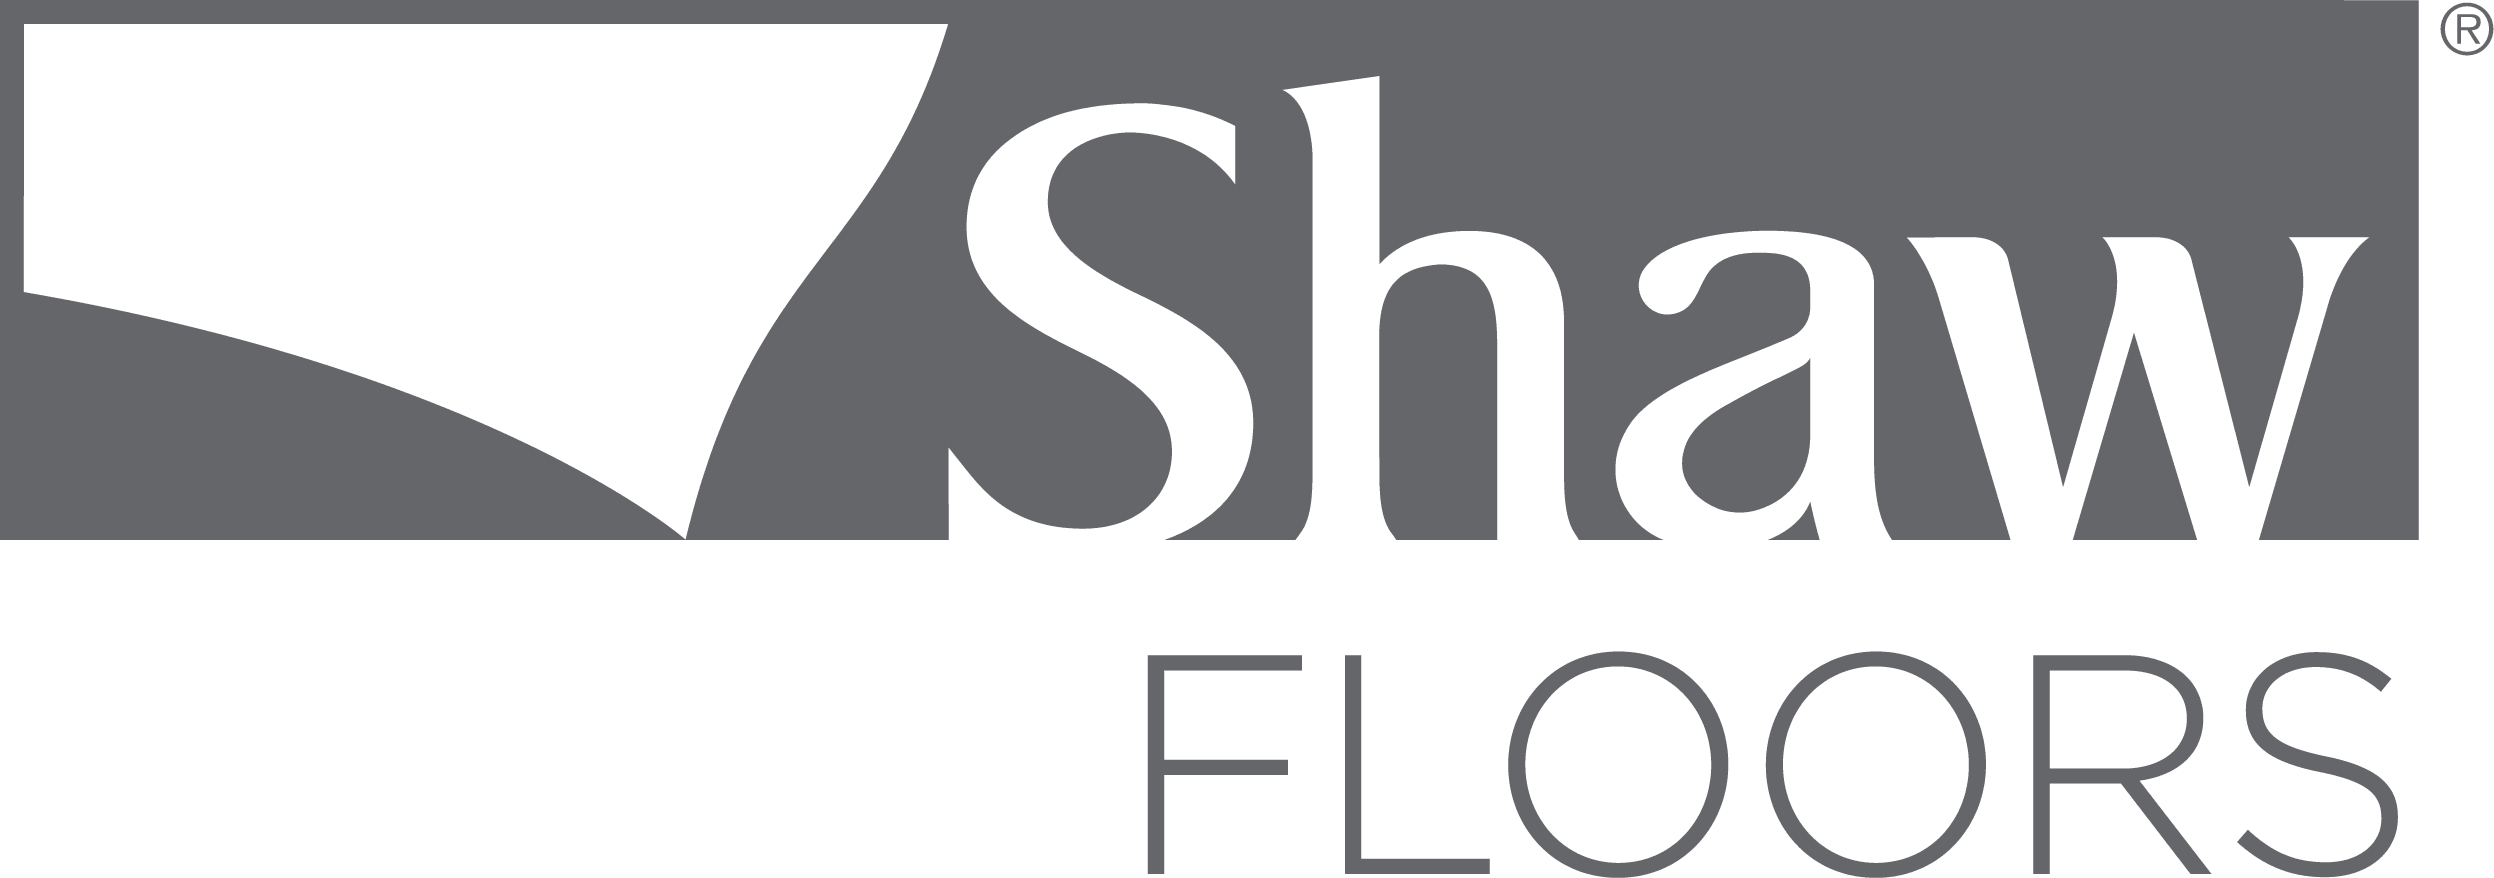 Shaw floor logo